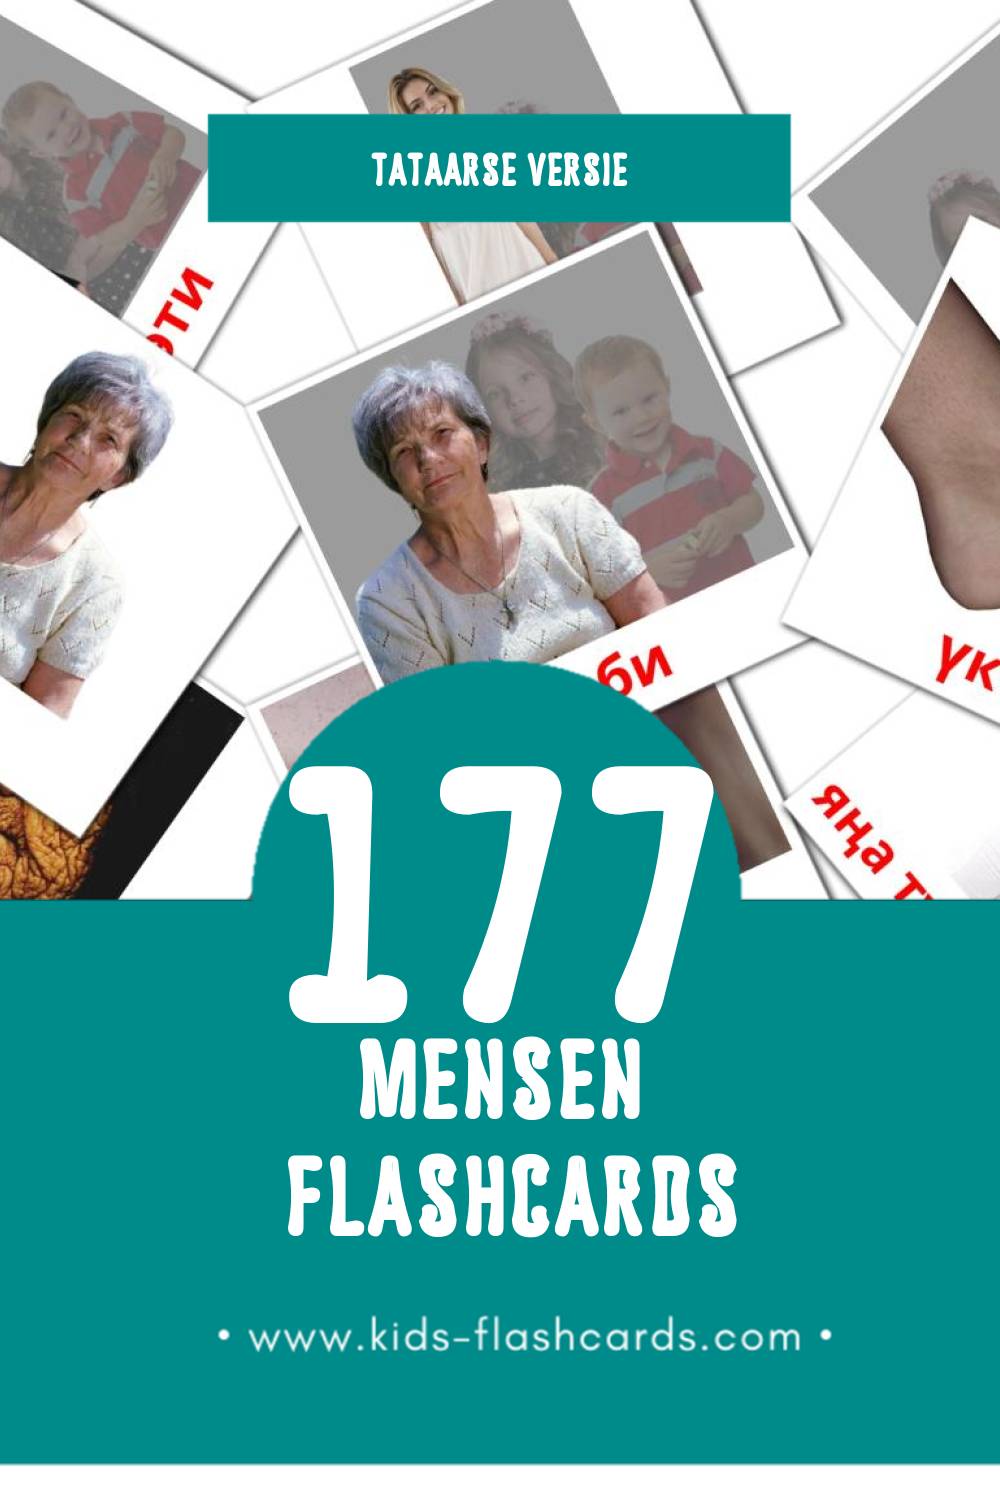 Visuele Кеше Flashcards voor Kleuters (177 kaarten in het Tataars)